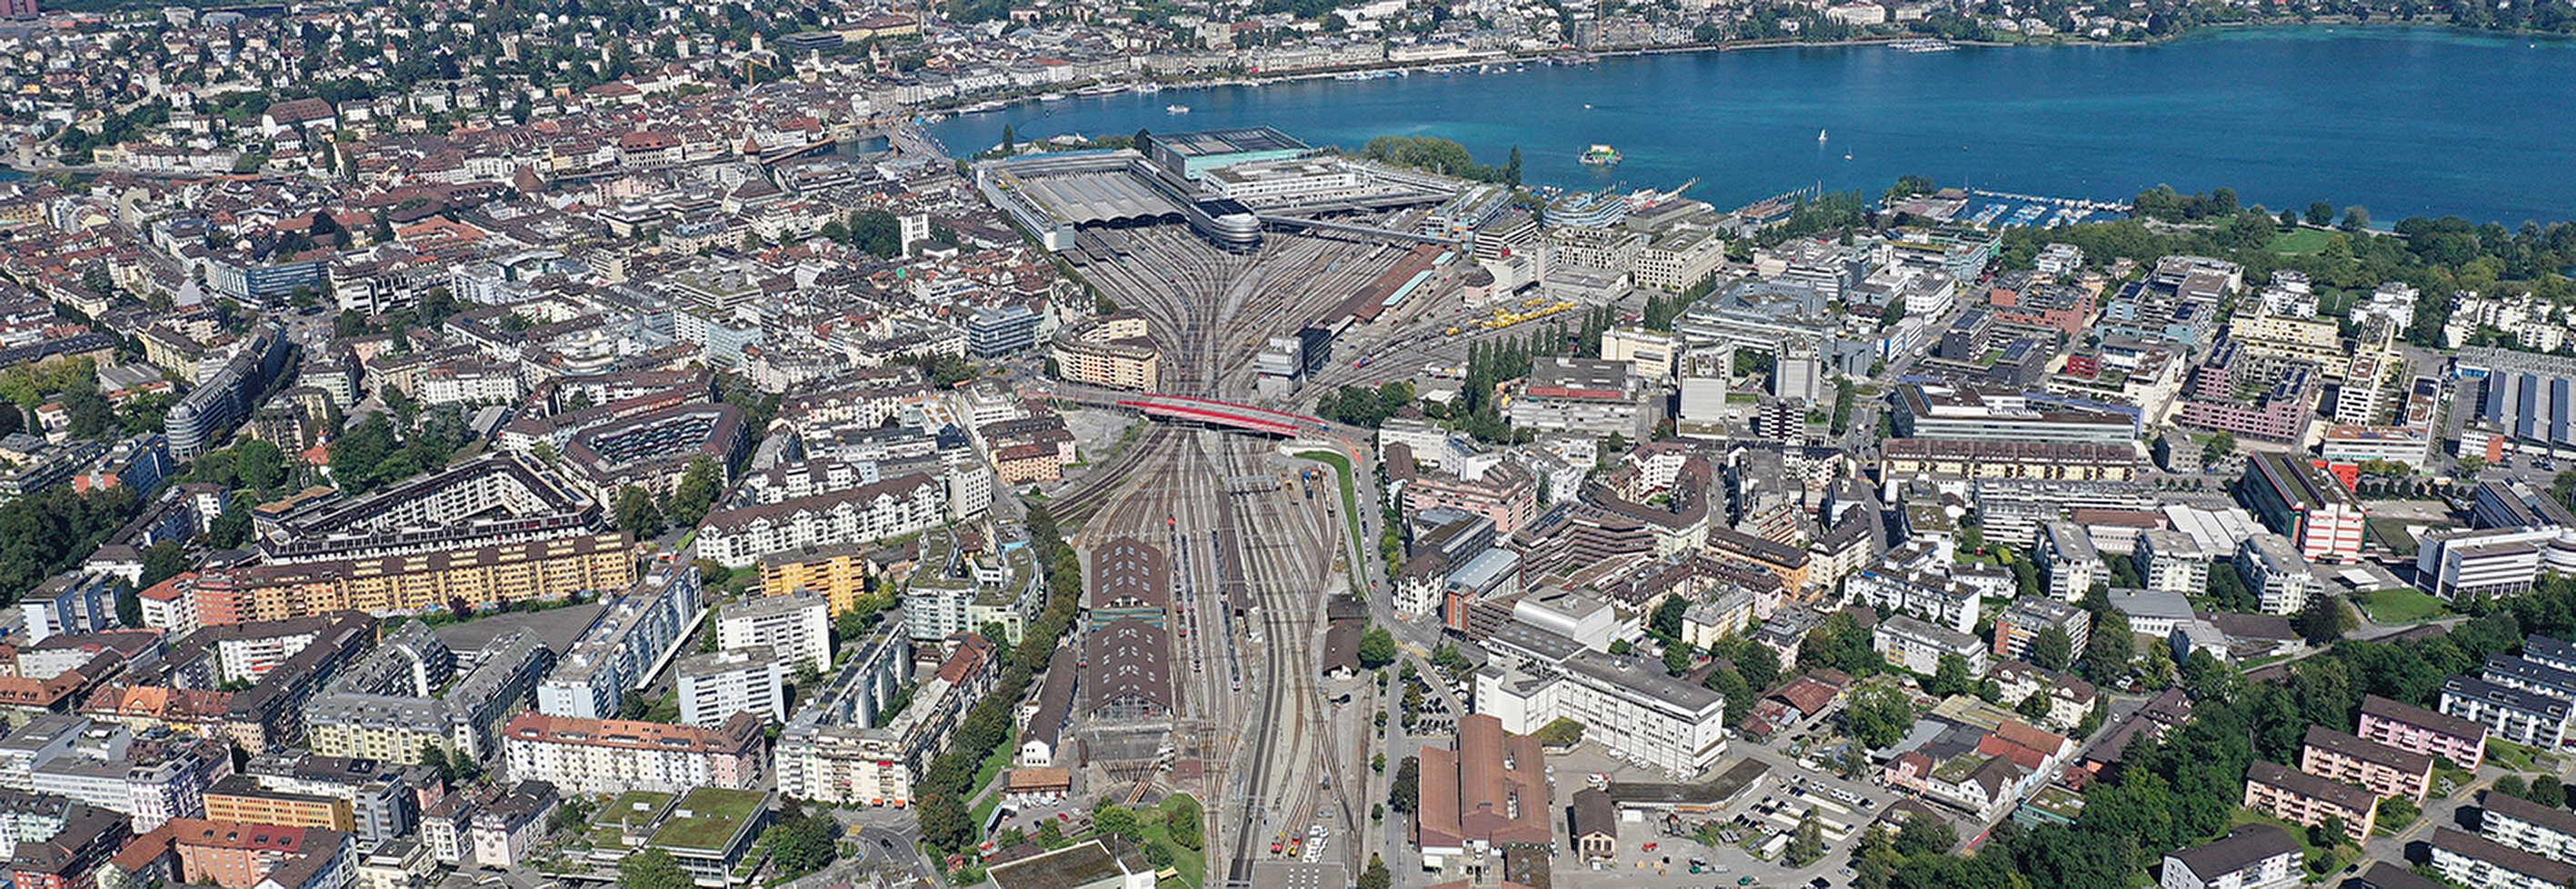 Luftbild Bahnhof Luzern